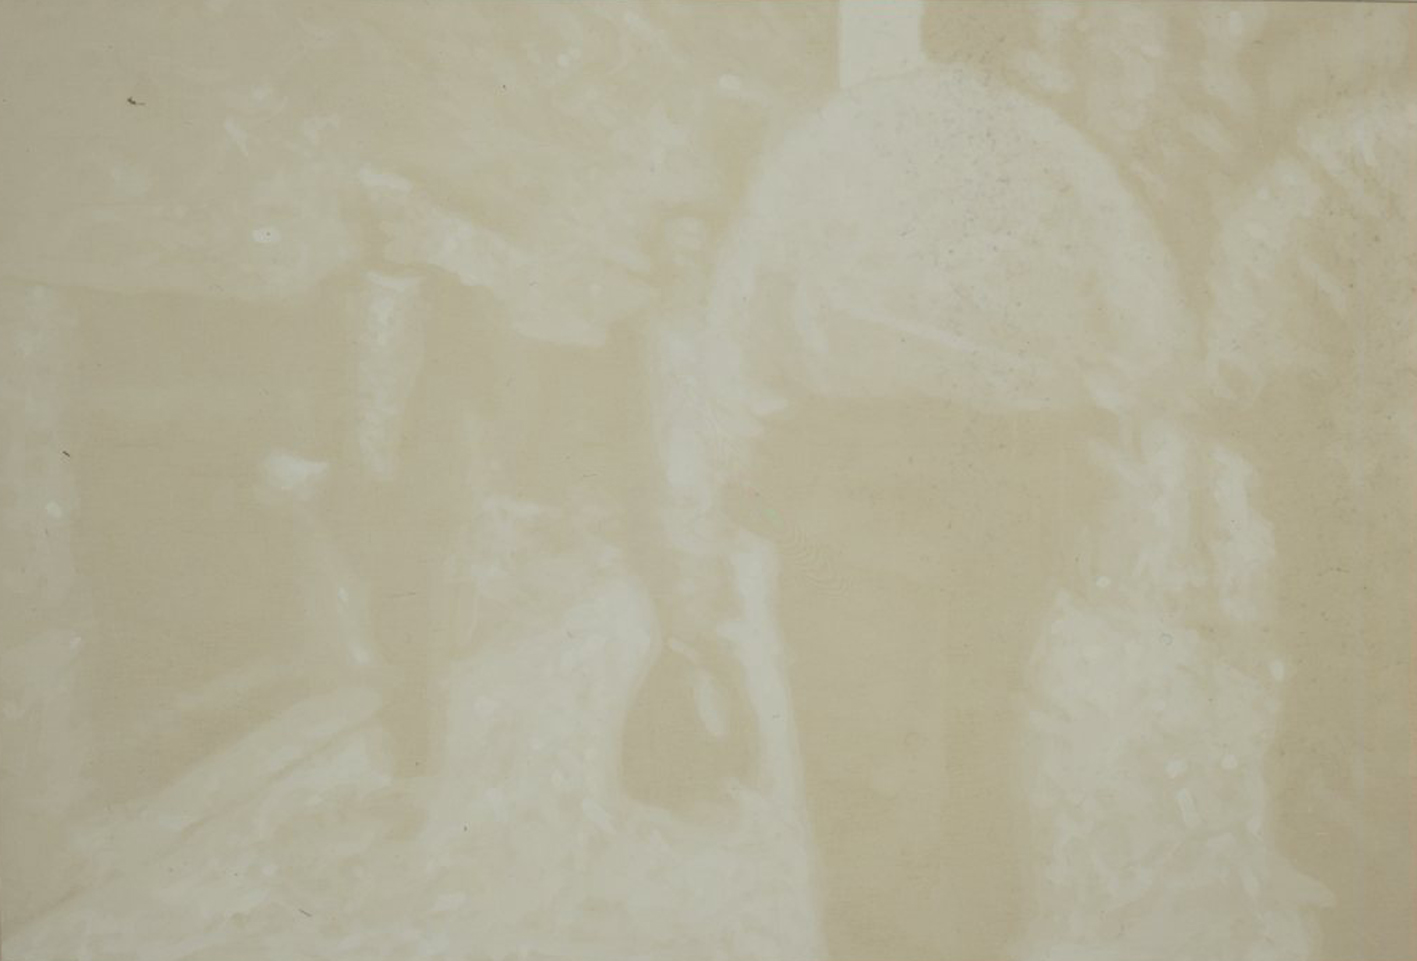 Pancrazzi, FuoriRegistro, 2001, 100×150 cm